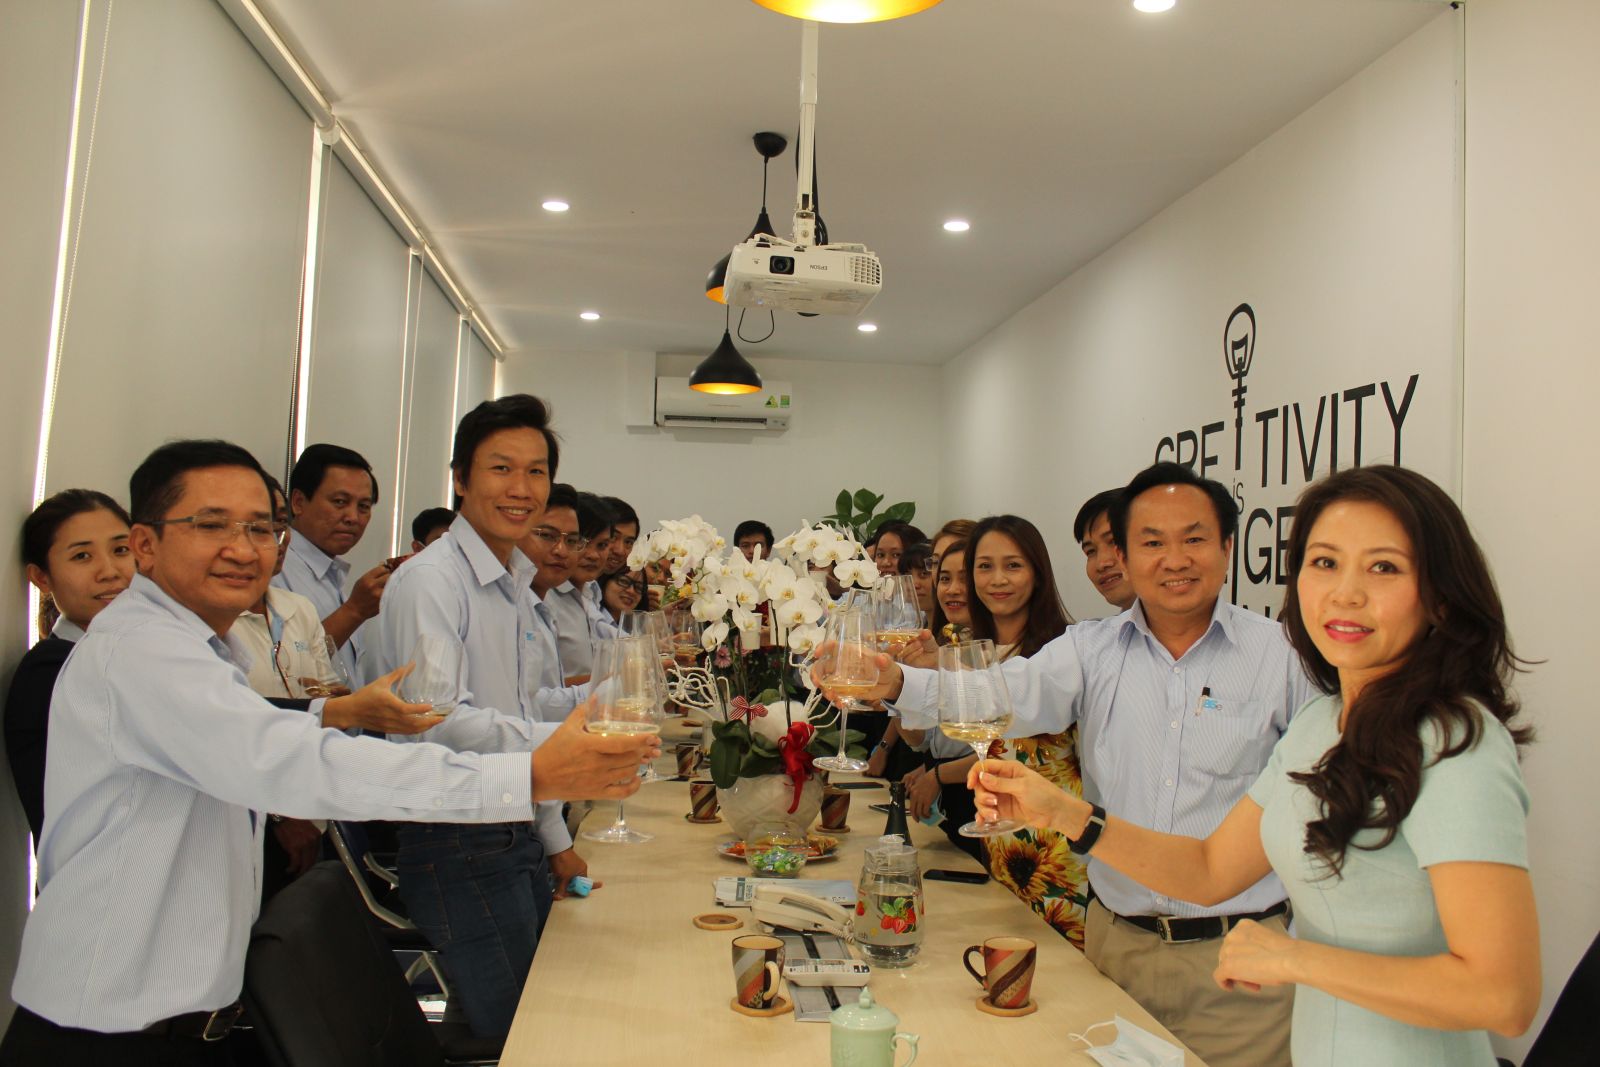 Ban giám đốc Công ty và toàn thể CBNV cùng khui Champagne khai Xuân cho một năm mới an khang, thịnh vượng.